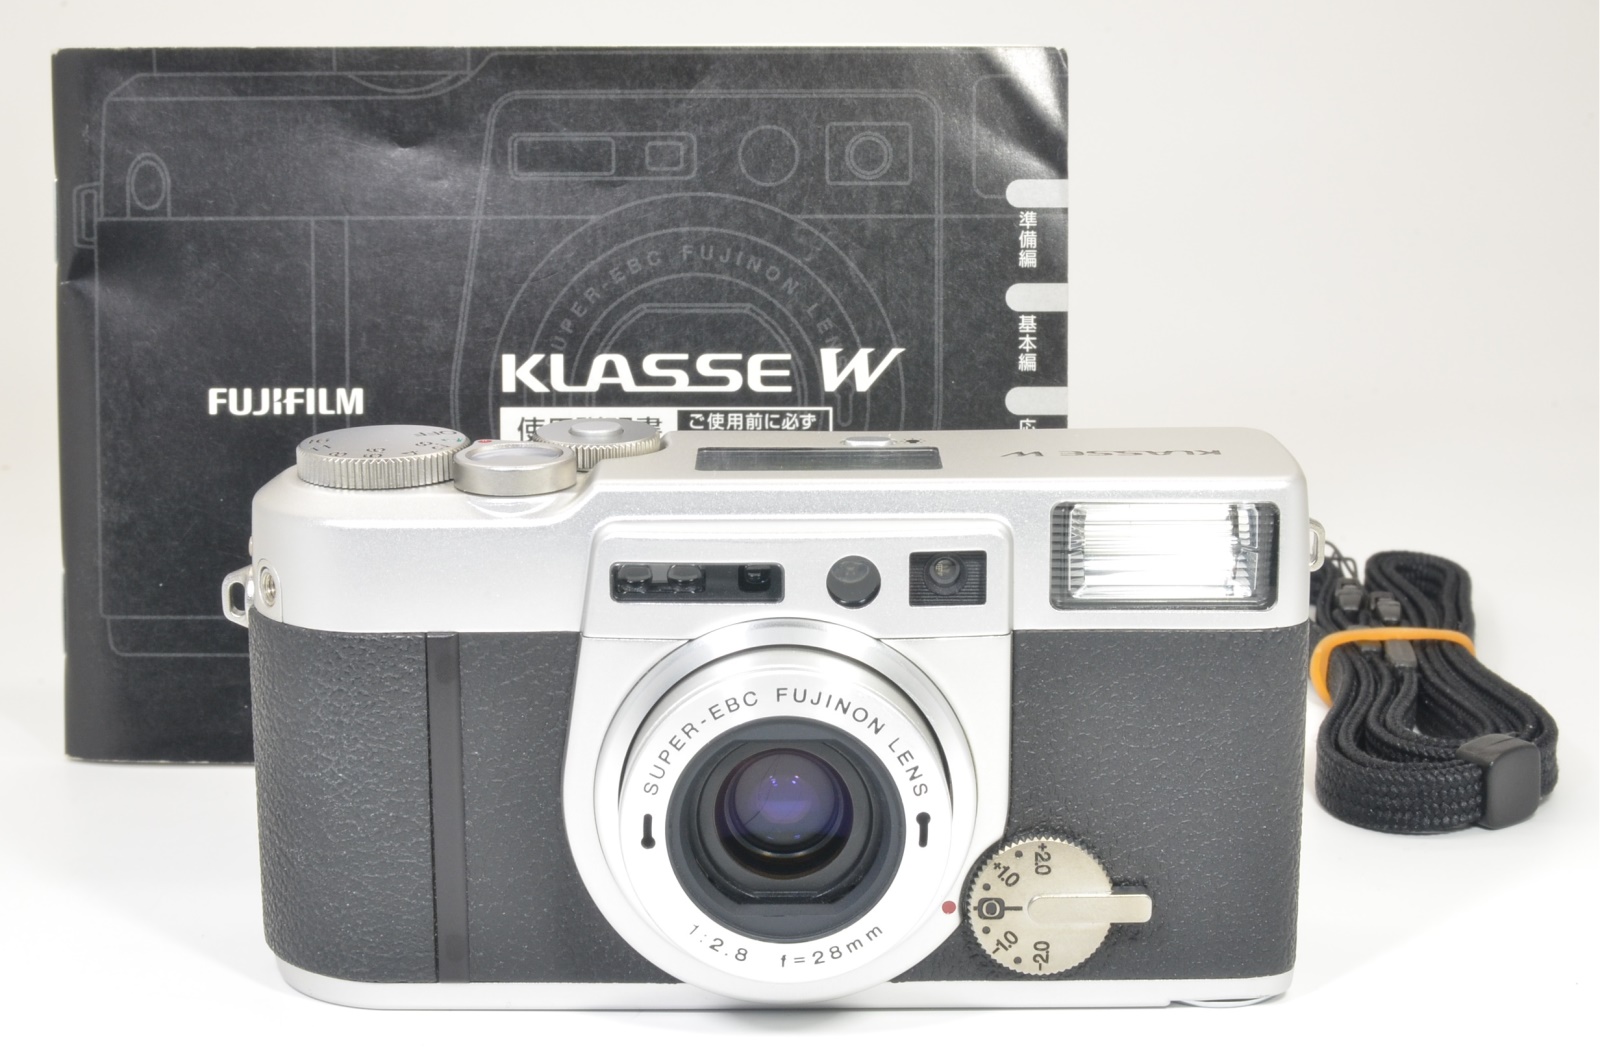 Fuji Fujifilm KLASSE W Silver 28mm f2.8 film camera from Japan